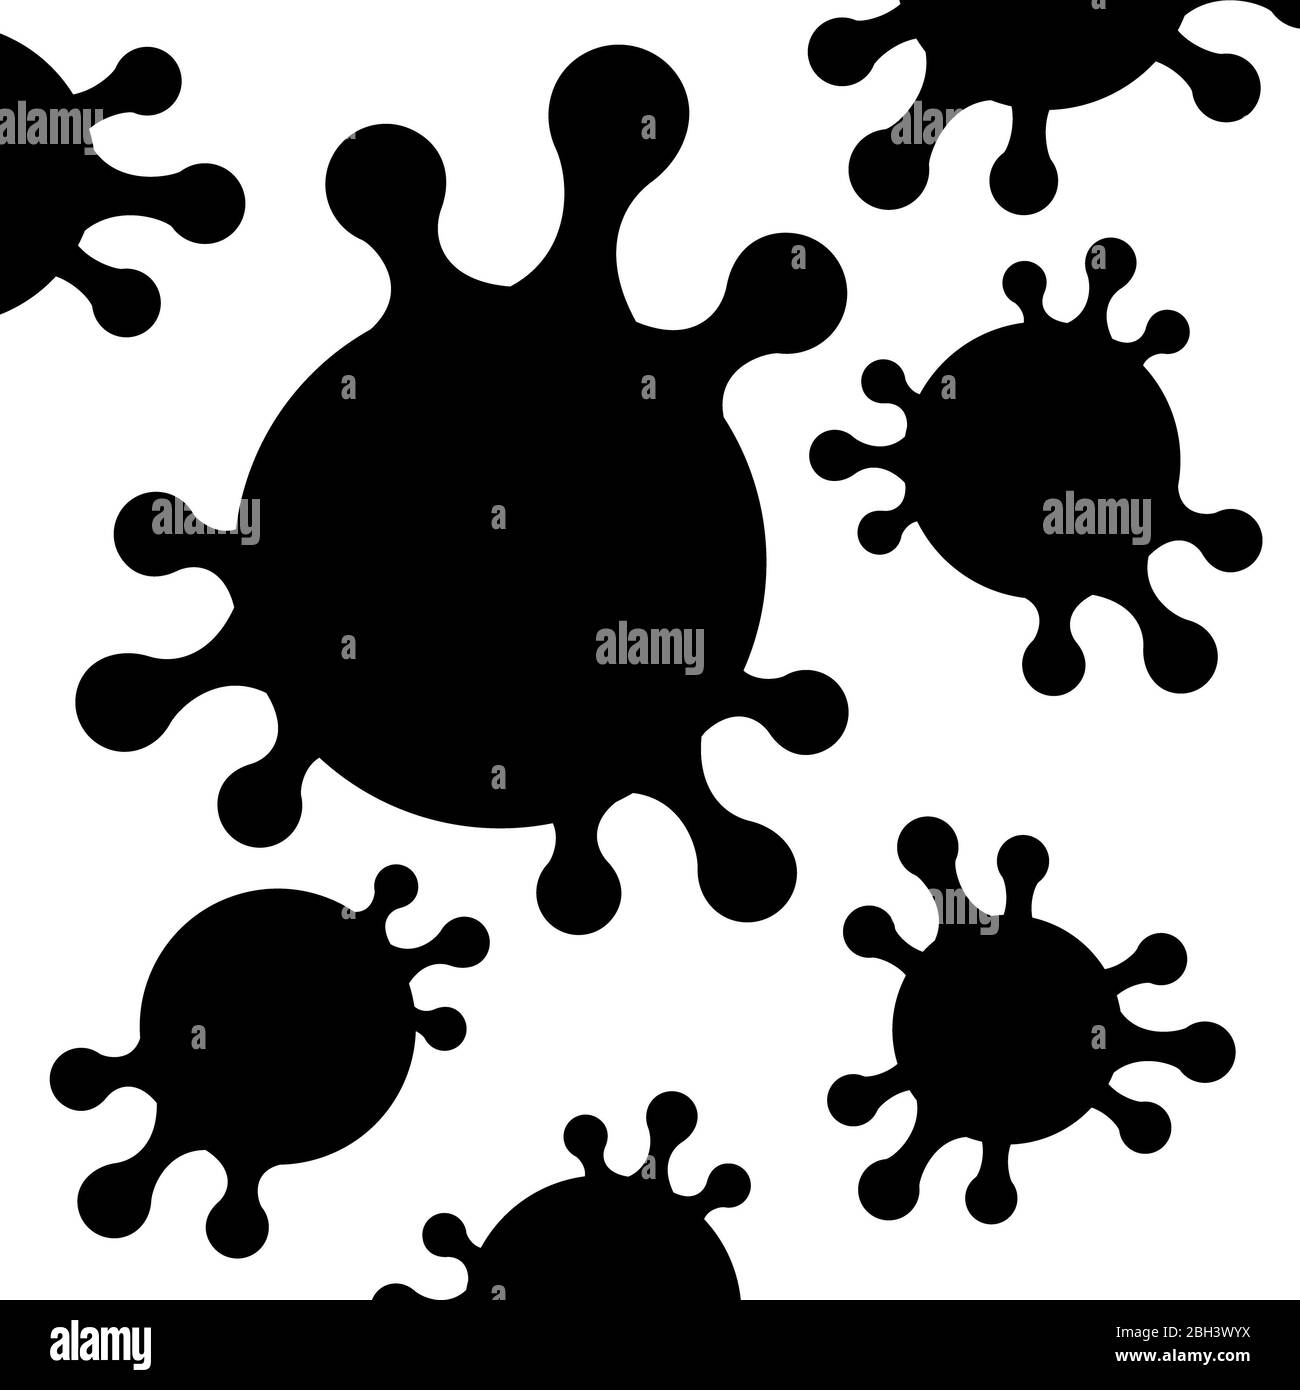 illustrazione del coronavirus alle statistiche di malattia di notizie. stop il virus del covid-19.isolato su sfondo bianco, disegno vettoriale nero isolato su bianco Foto Stock